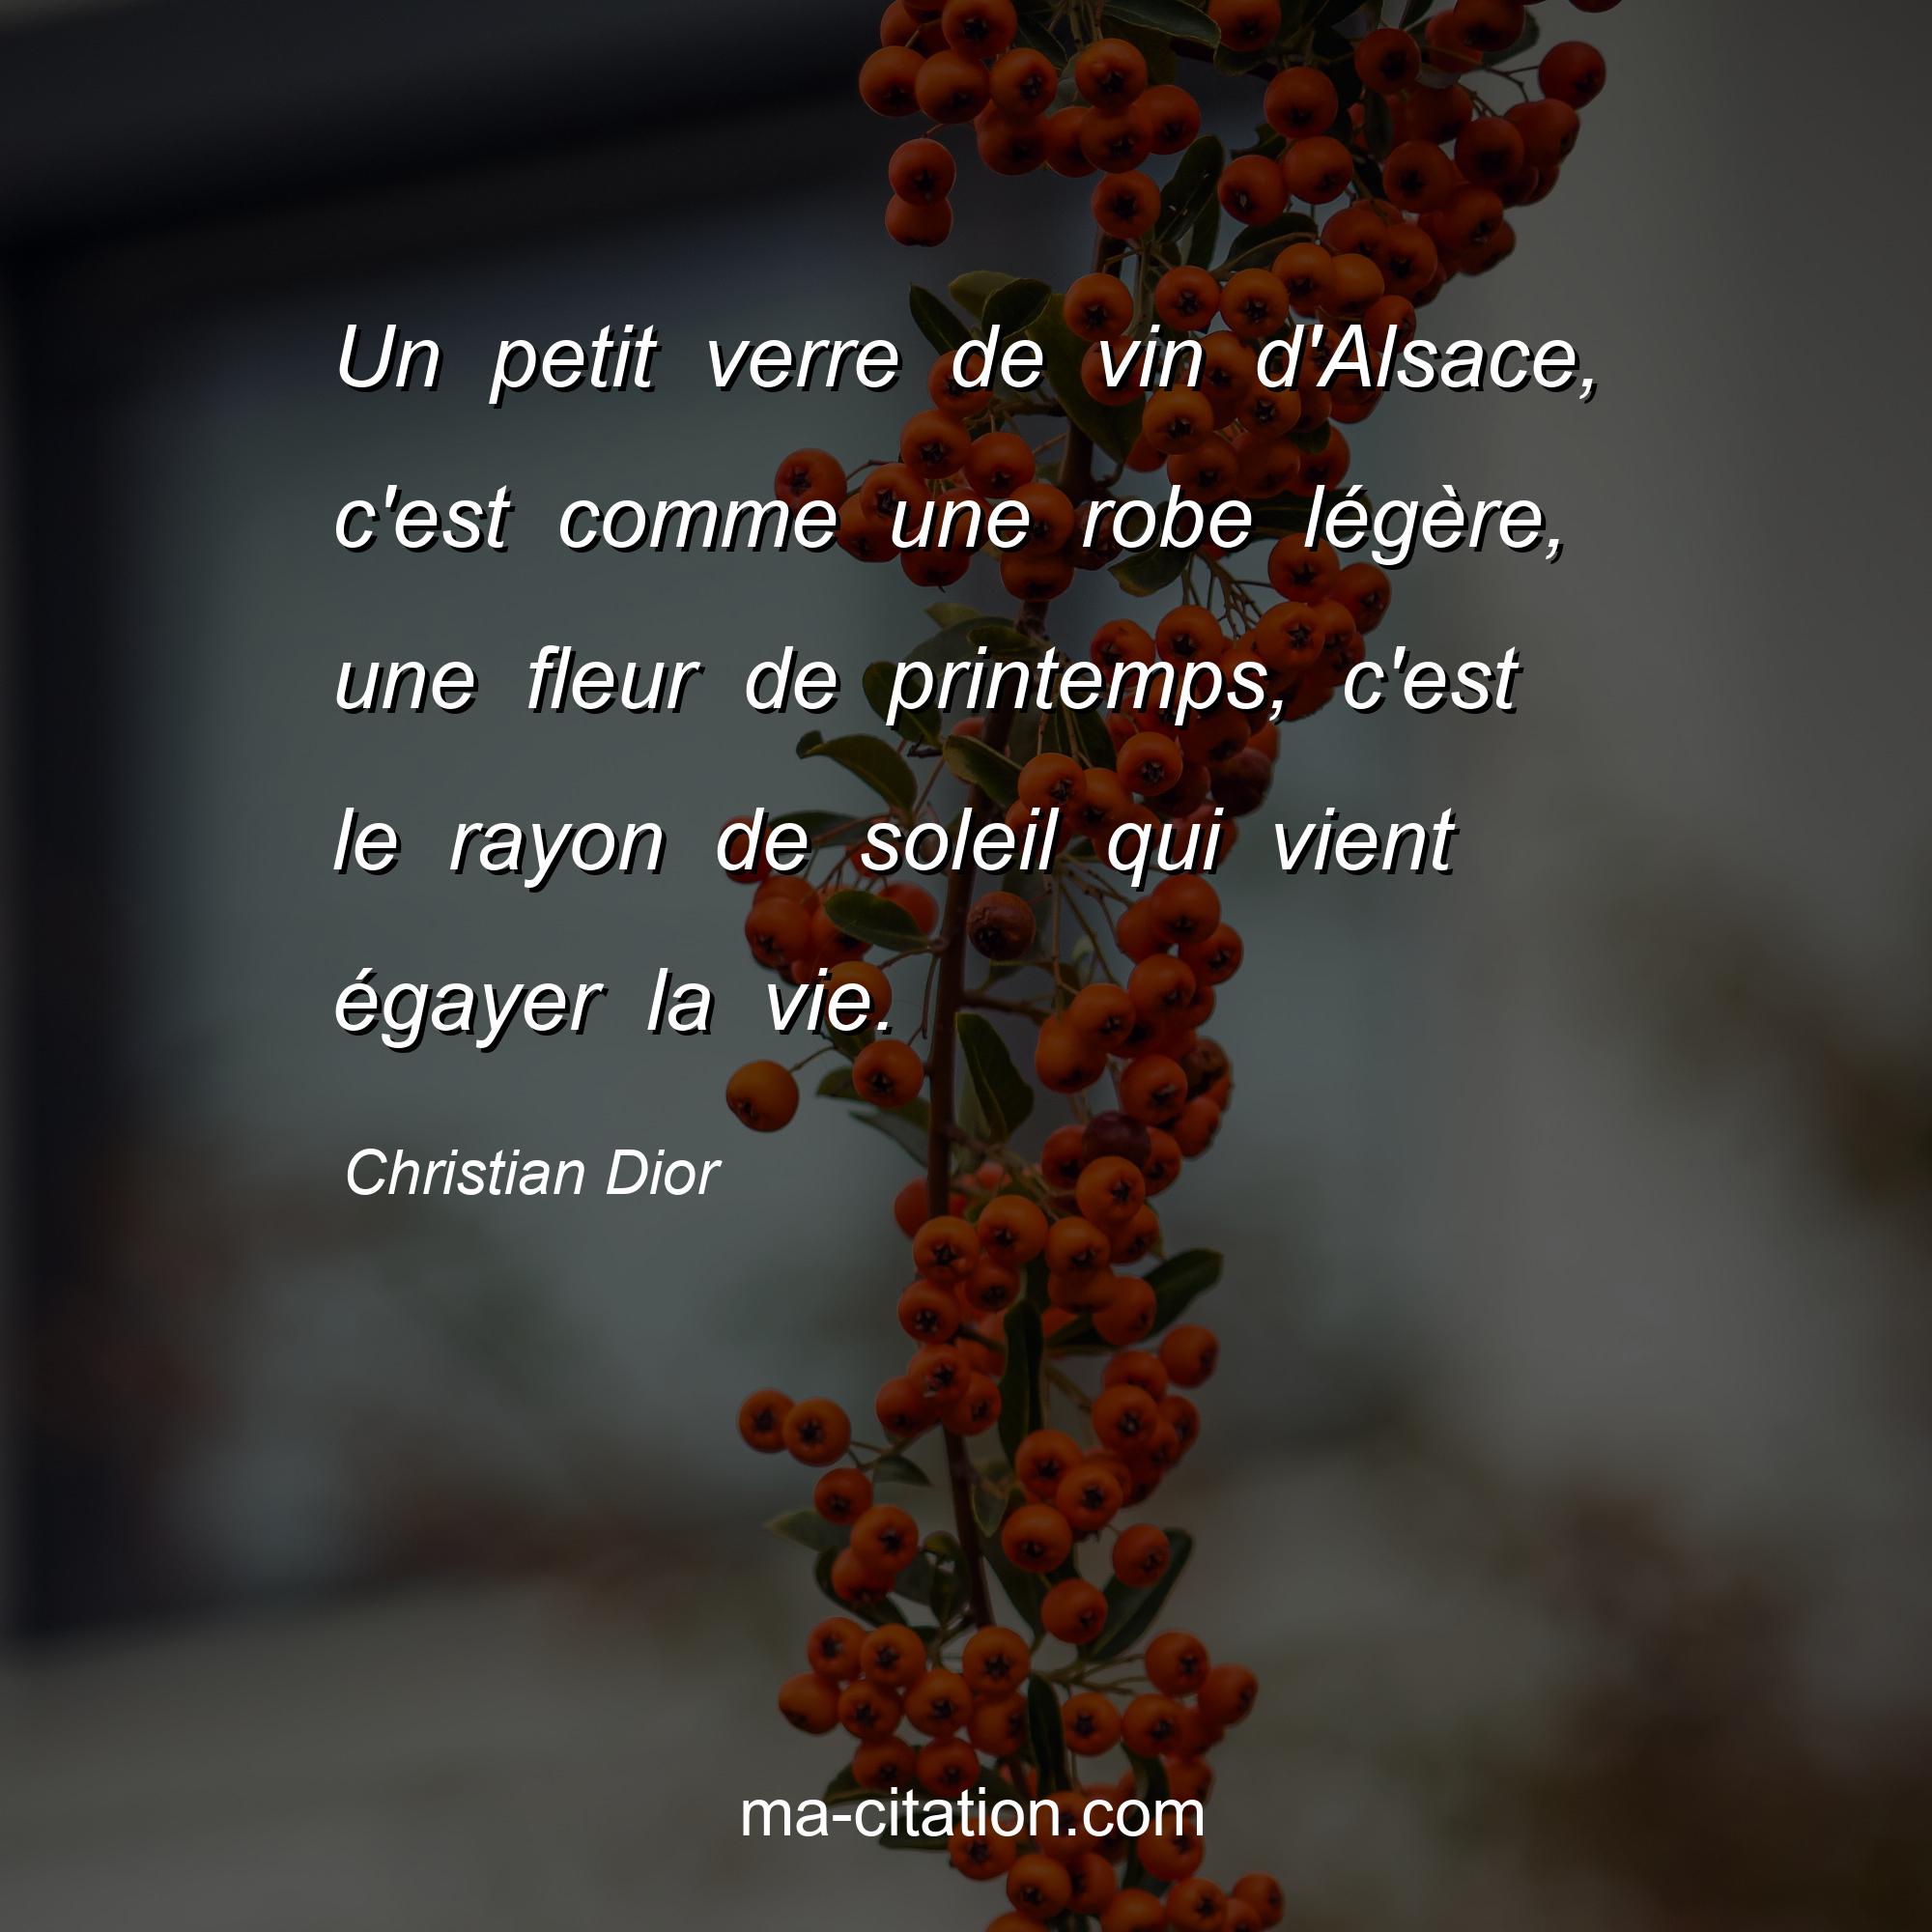 Christian Dior : Un petit verre de vin d'Alsace, c'est comme une robe légère, une fleur de printemps, c'est le rayon de soleil qui vient égayer la vie.